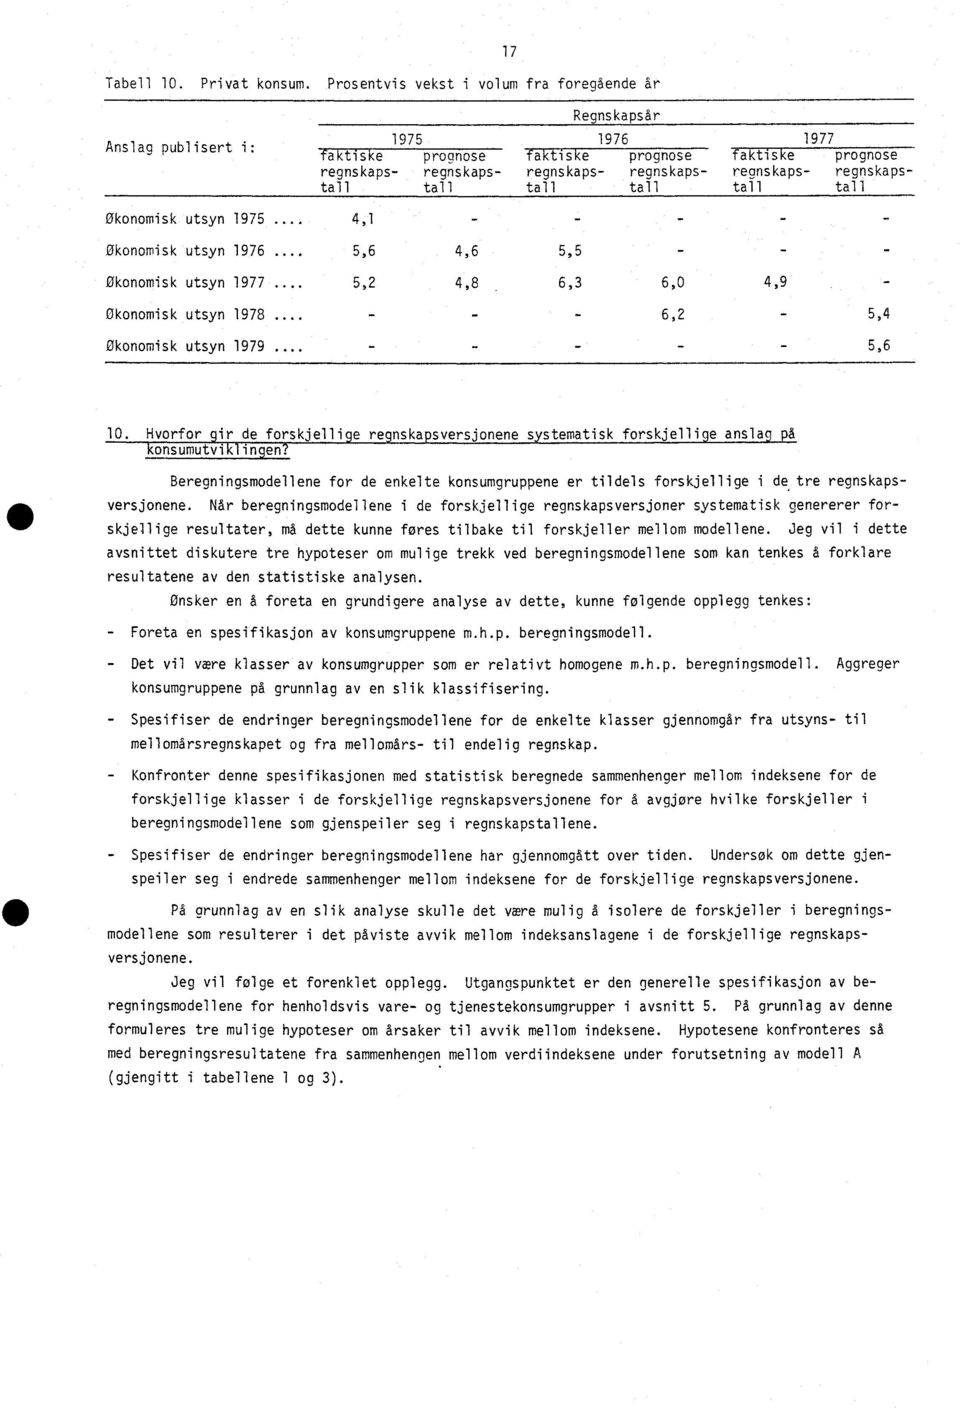 regnskaps- regnskapstall tall tall tall tall tall Økonomisk utsyn 1975... 4,1 - - - Økonomisk utsyn 1976 a... 5,6 4,6 5,5 - Økonomisk utsyn 1977... 5,2 4,8 6,3 6,0 4,9 økonomisk utsyn 1978.